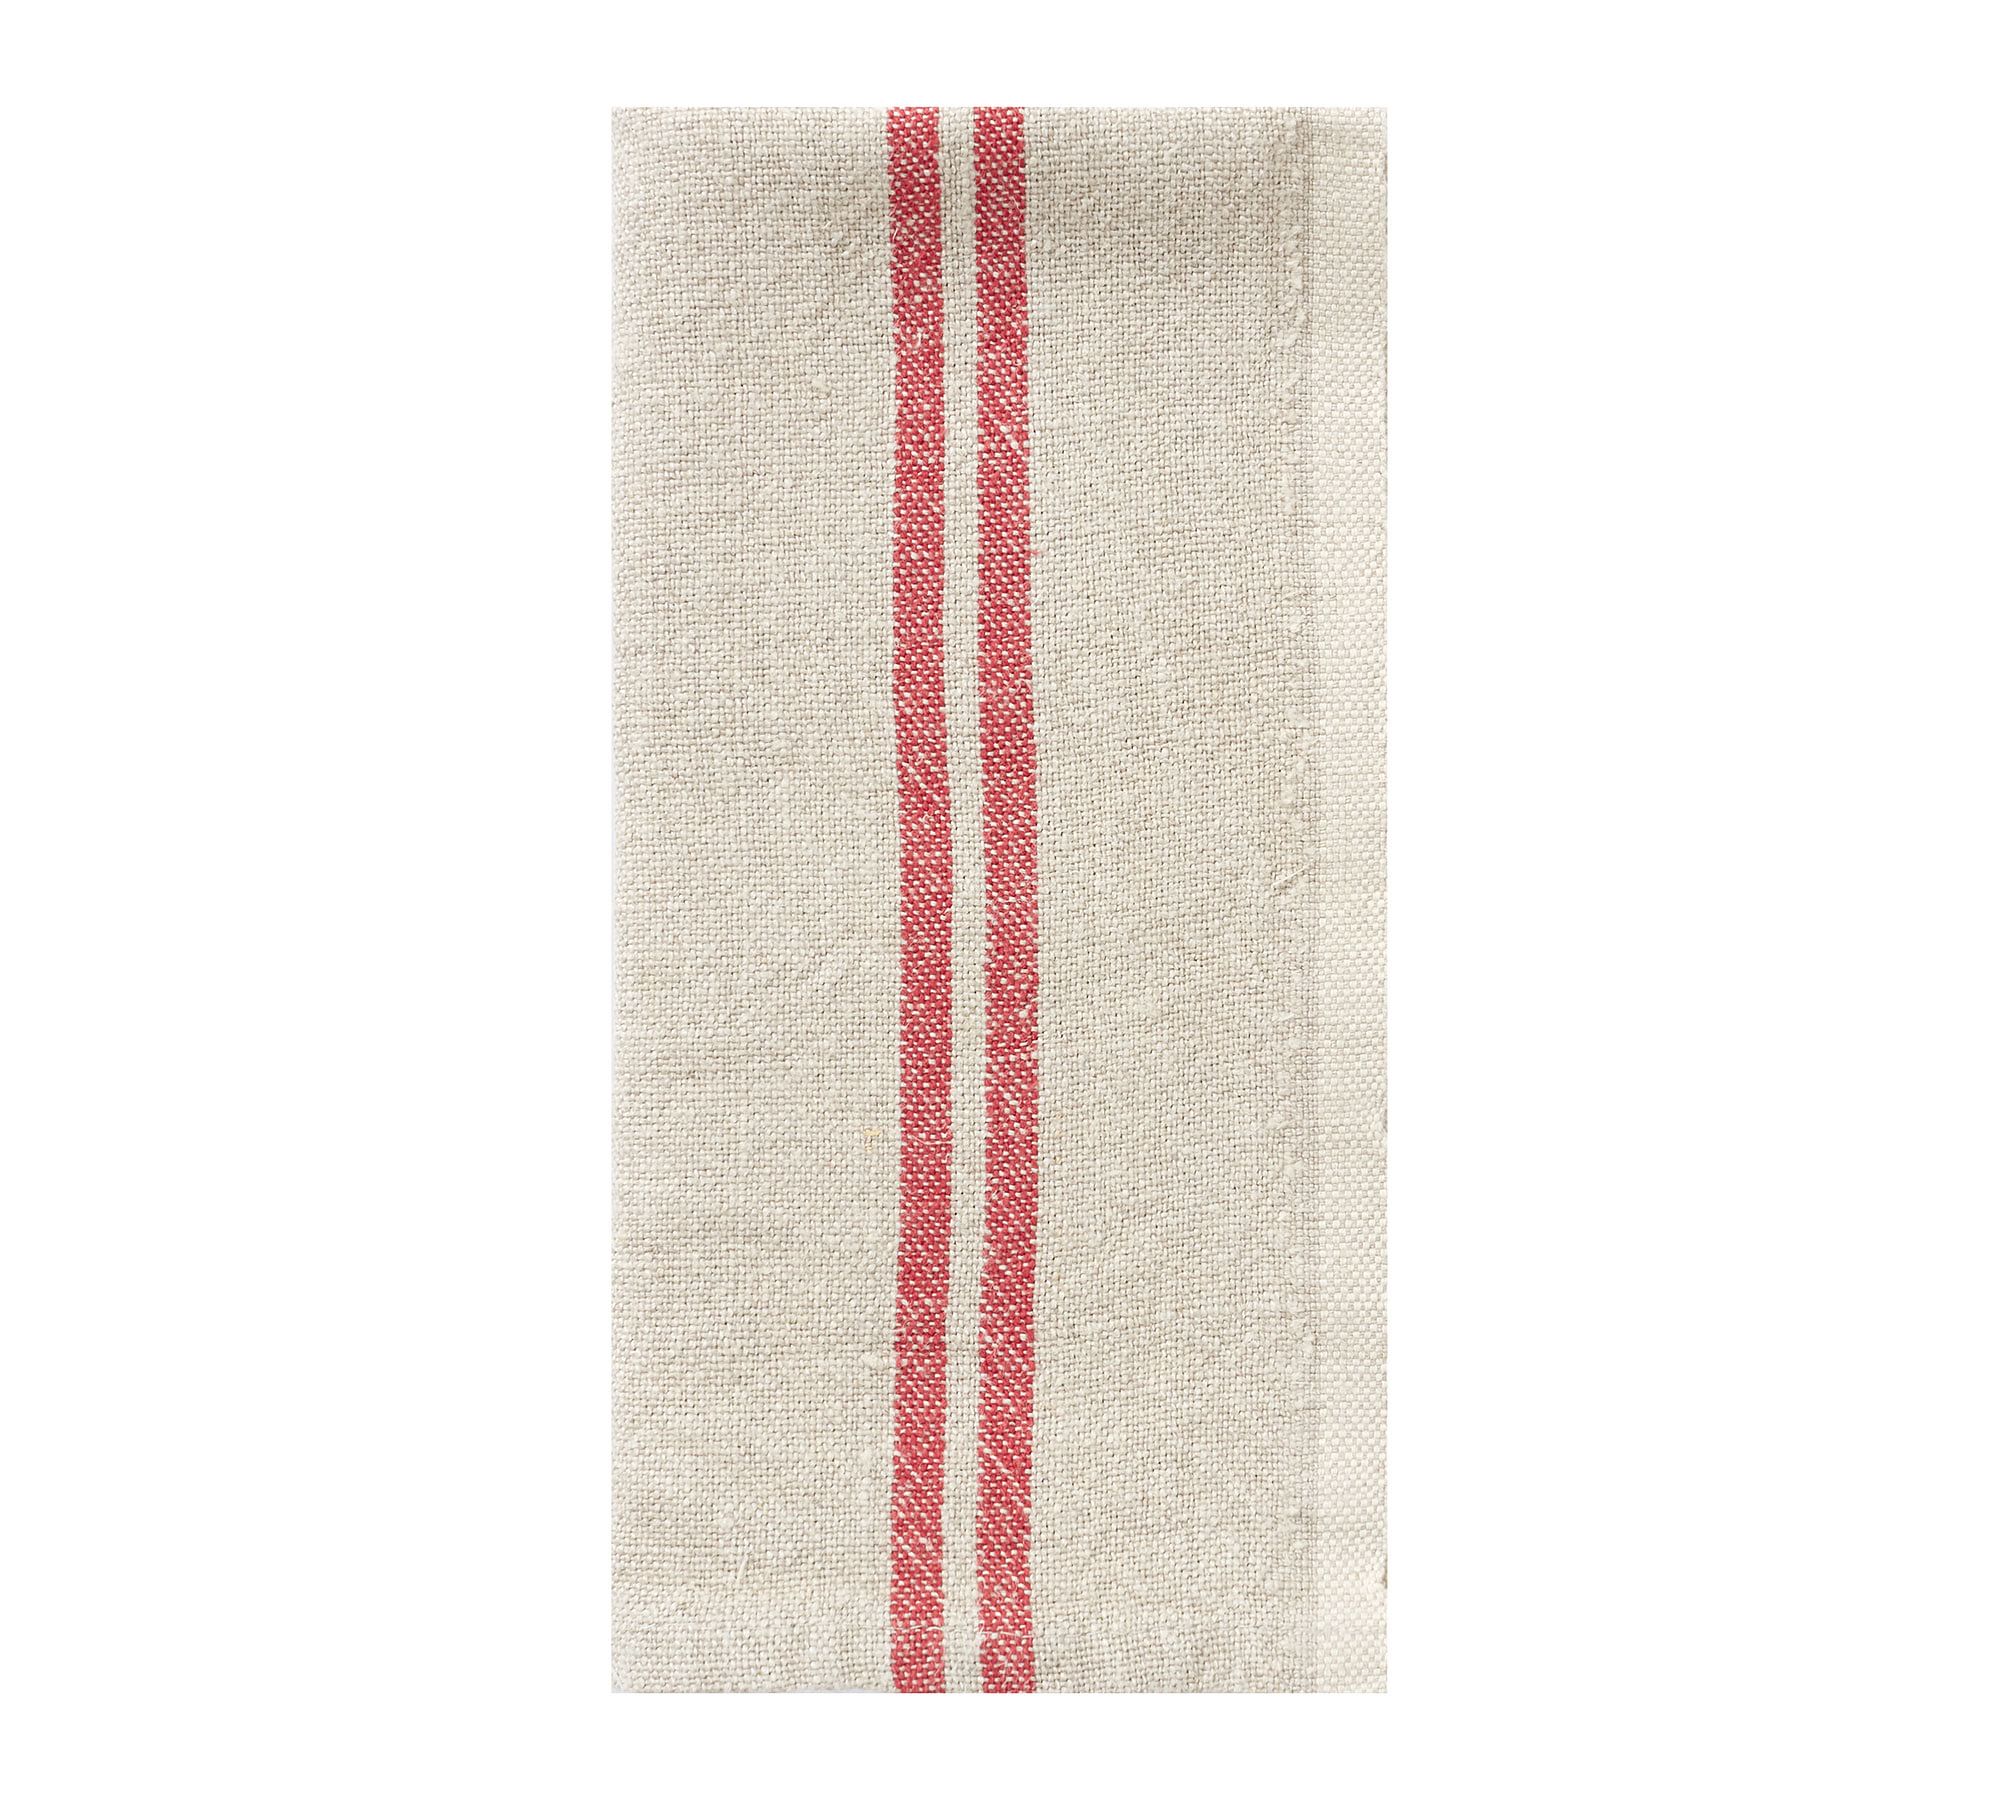 Caravan Vintage Striped Linen Napkins - Set of 4